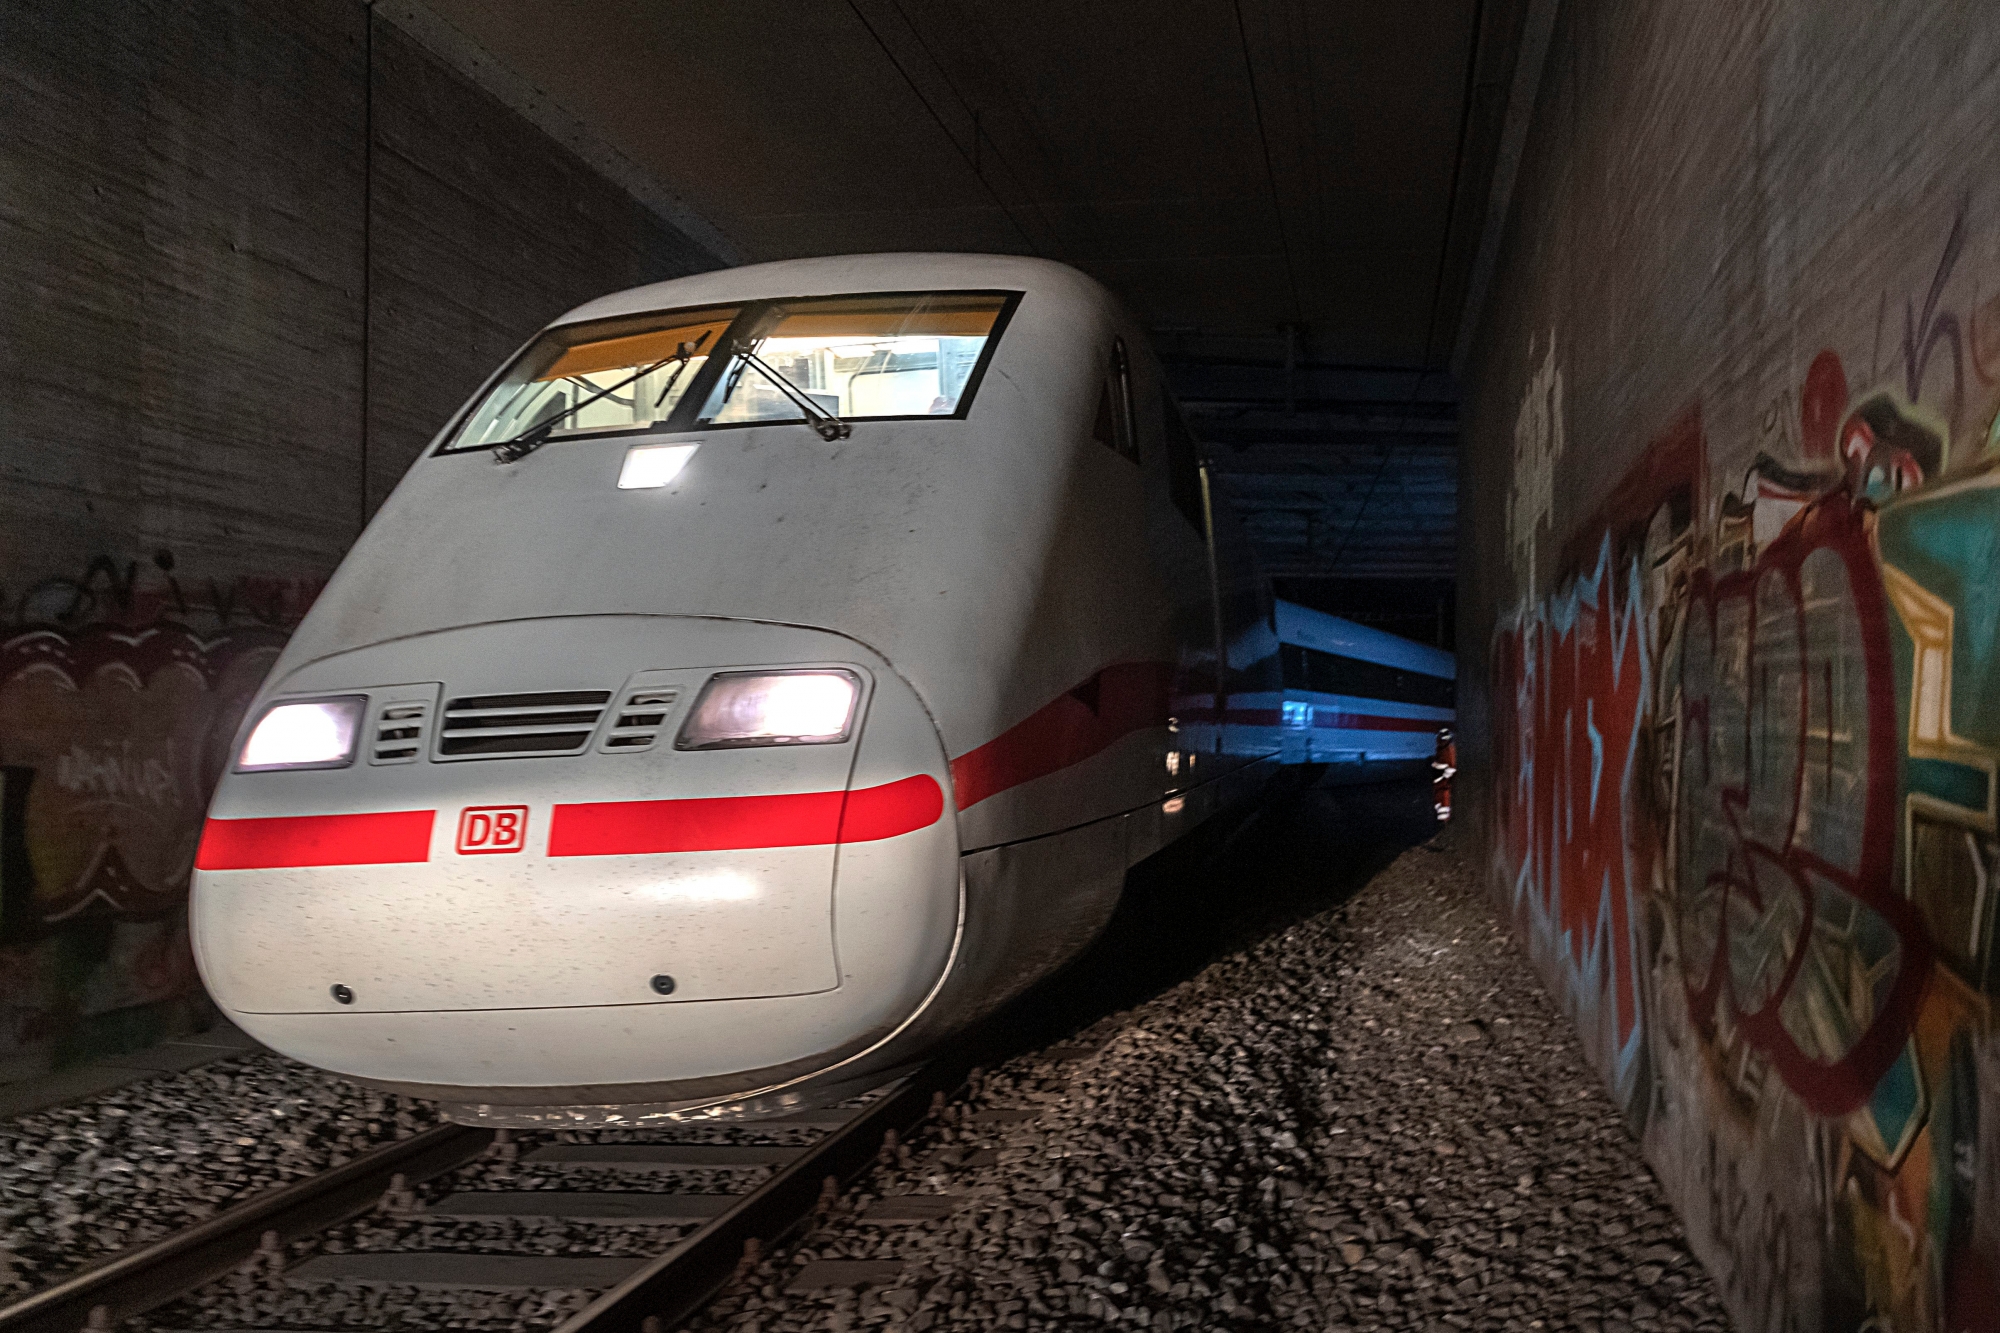 Der entgleiste Intercity-Zug (ICE) in Basel am Montag, 18. Februar 2019. Am Sonntagabend ist ein Intercity-Zug der Deutschen Bahn zwischen dem Badischen Bahnhof und dem Bahnhof Basel SBB entgleist.(KEYSTONE/Georgios Kefalas) SCHWEIZ BASEL ZUGSENTGLEISUNG